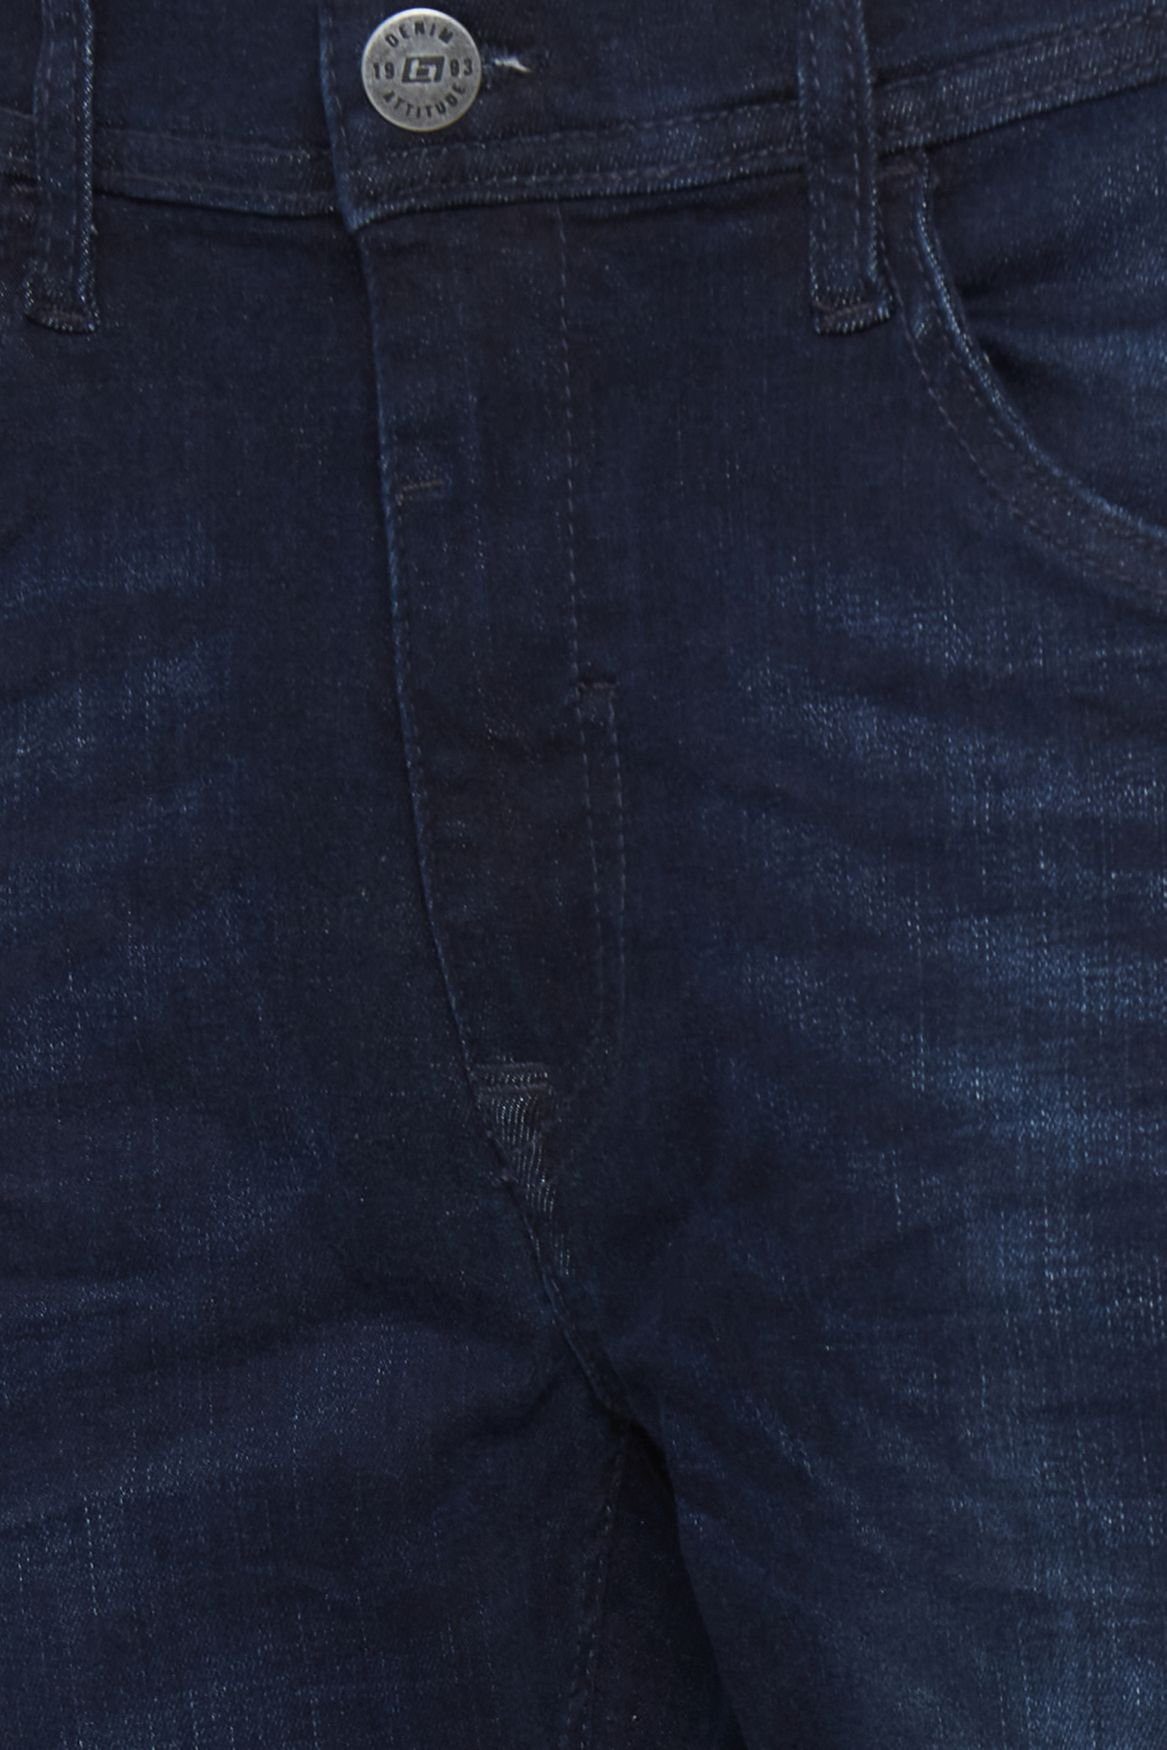 Jeans TWISTER Basic Dunkelblau Slim-fit-Jeans FIT Blend Hose 5196 in Fit Slim Denim Stoned Washed